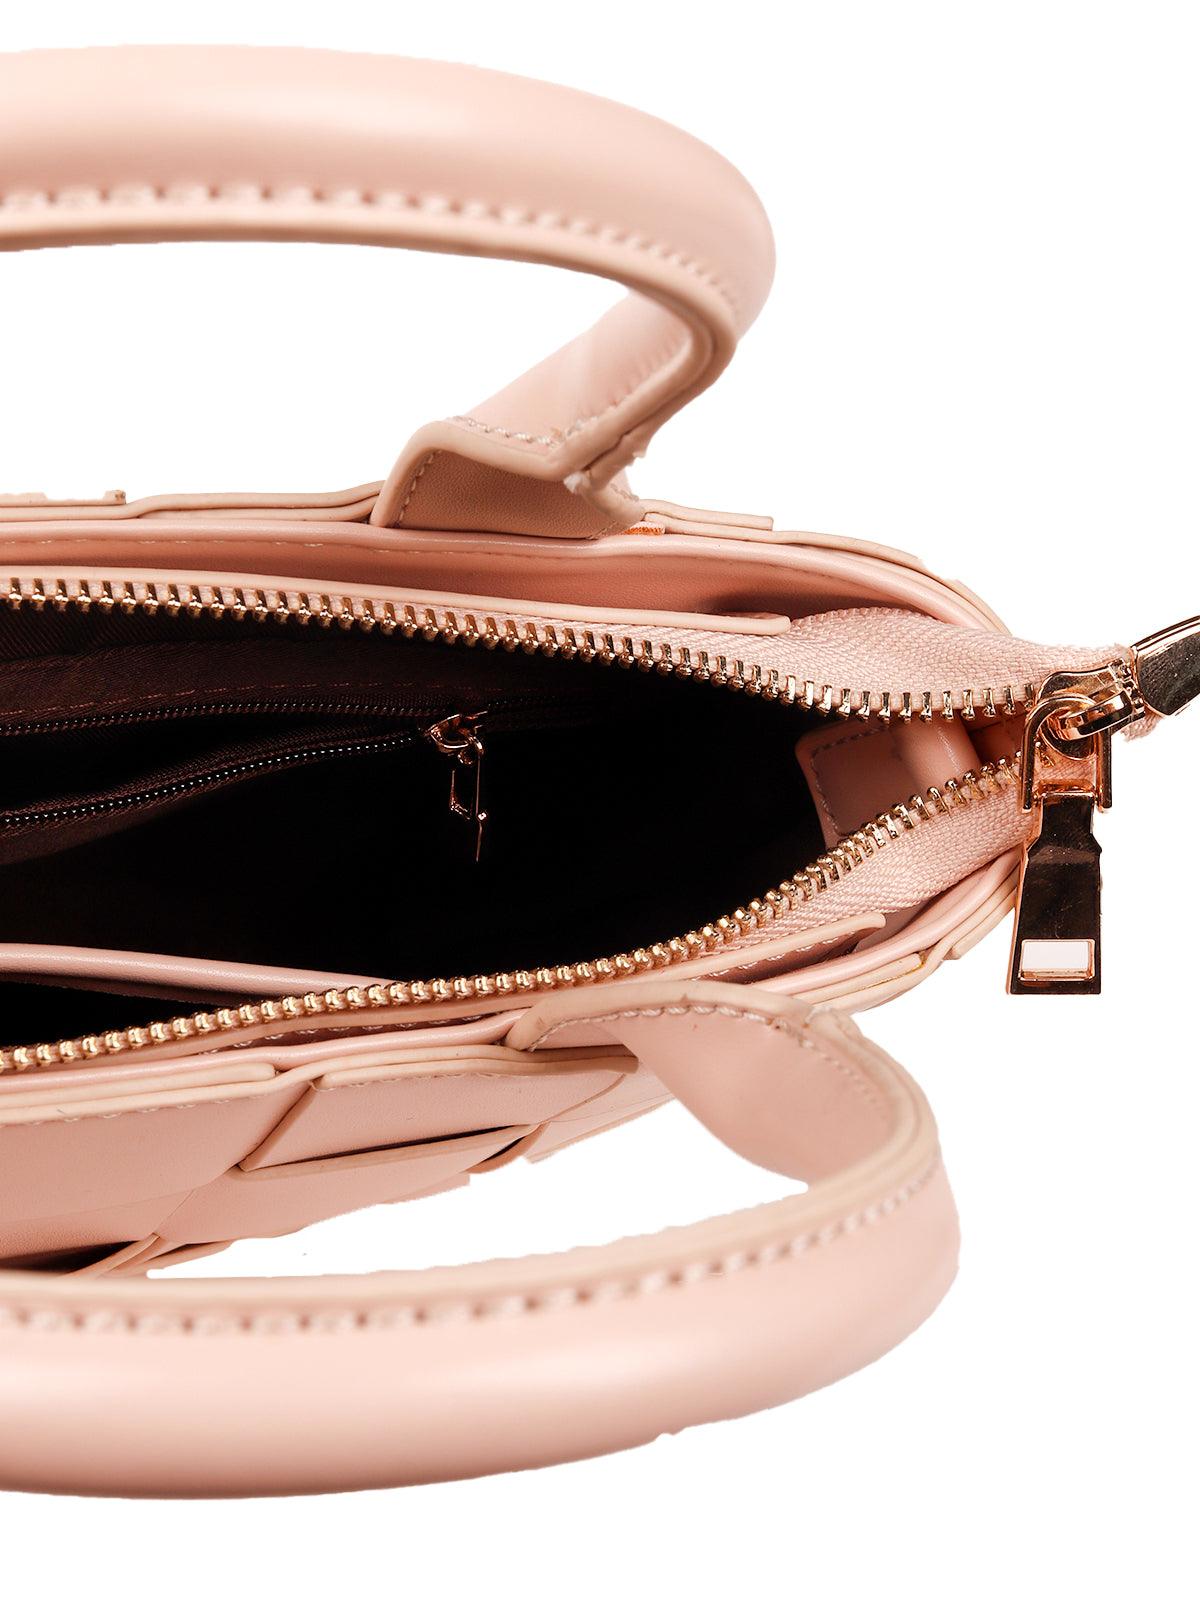 Blush pink basket designed sling bag - Odette